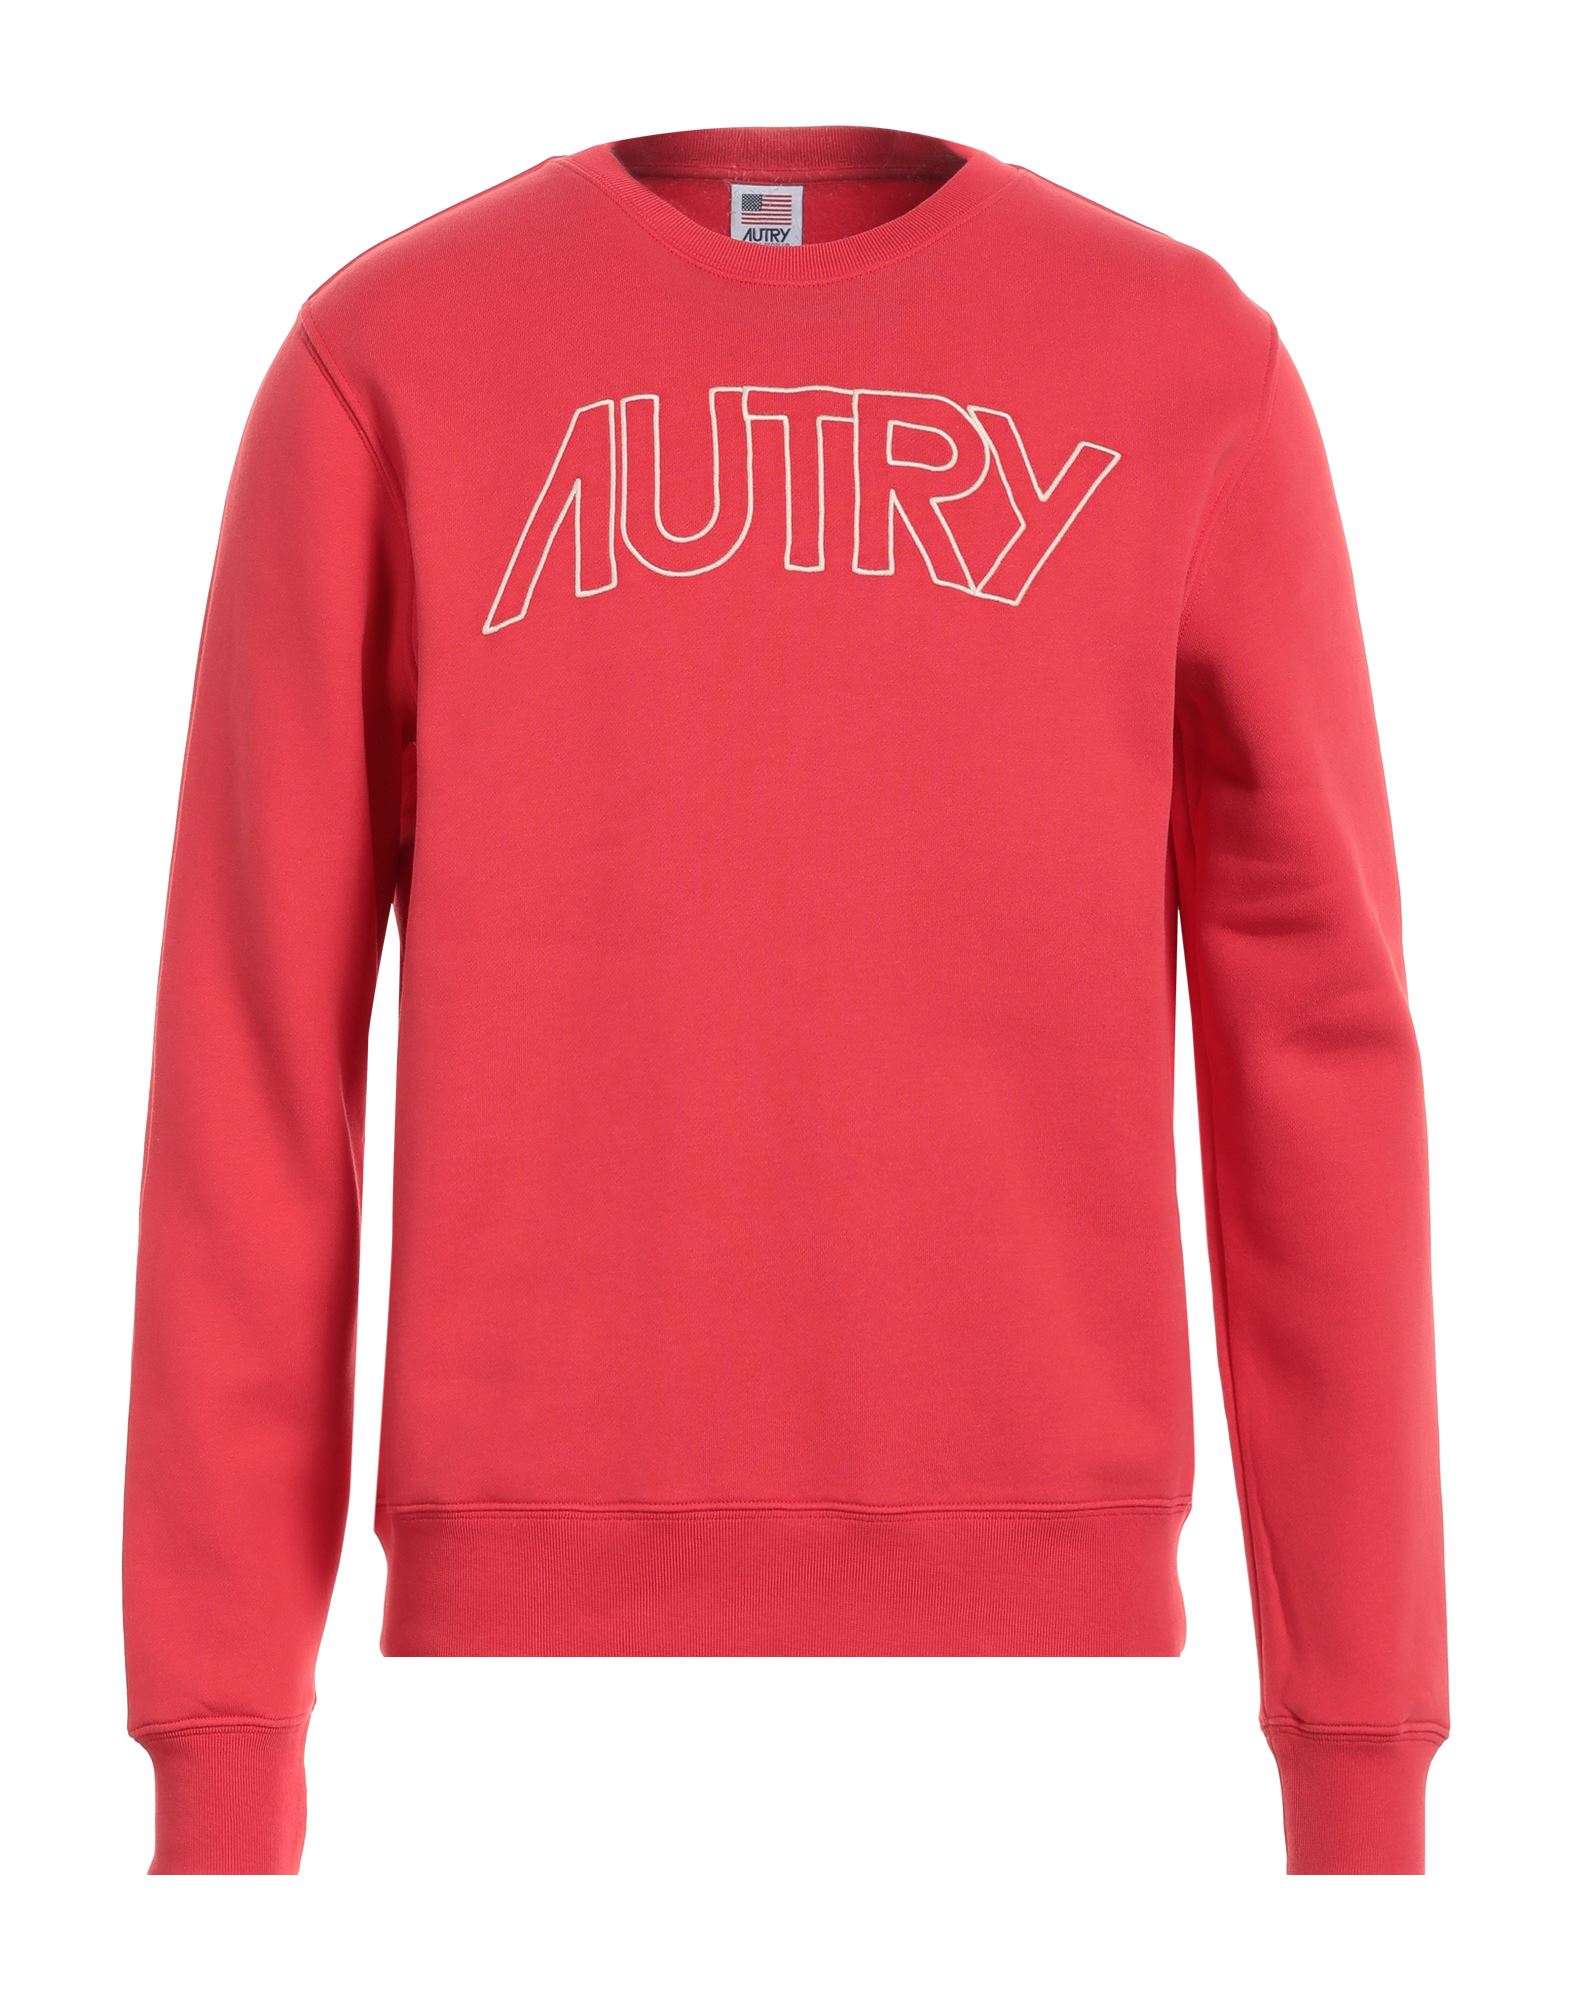 AUTRY Sweatshirt Herren Rot von AUTRY